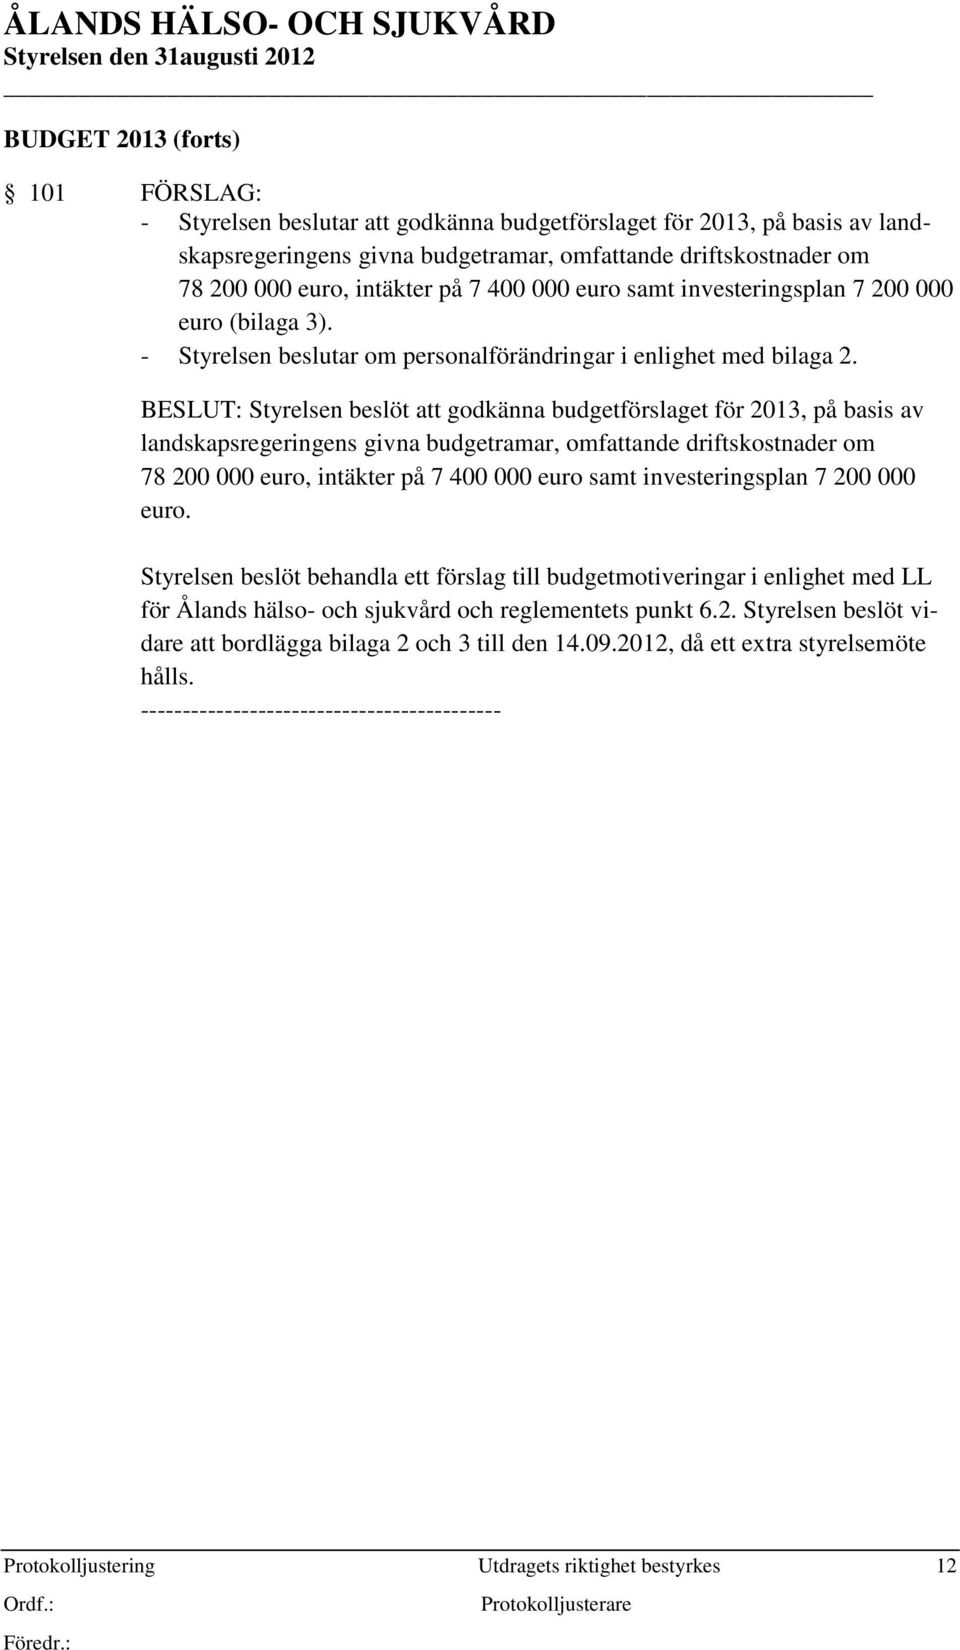 BESLUT: Styrelsen beslöt att godkänna budgetförslaget för 2013, på basis av landskapsregeringens givna budgetramar, omfattande driftskostnader om 78 200 000 euro, intäkter på 7 400 000 euro samt